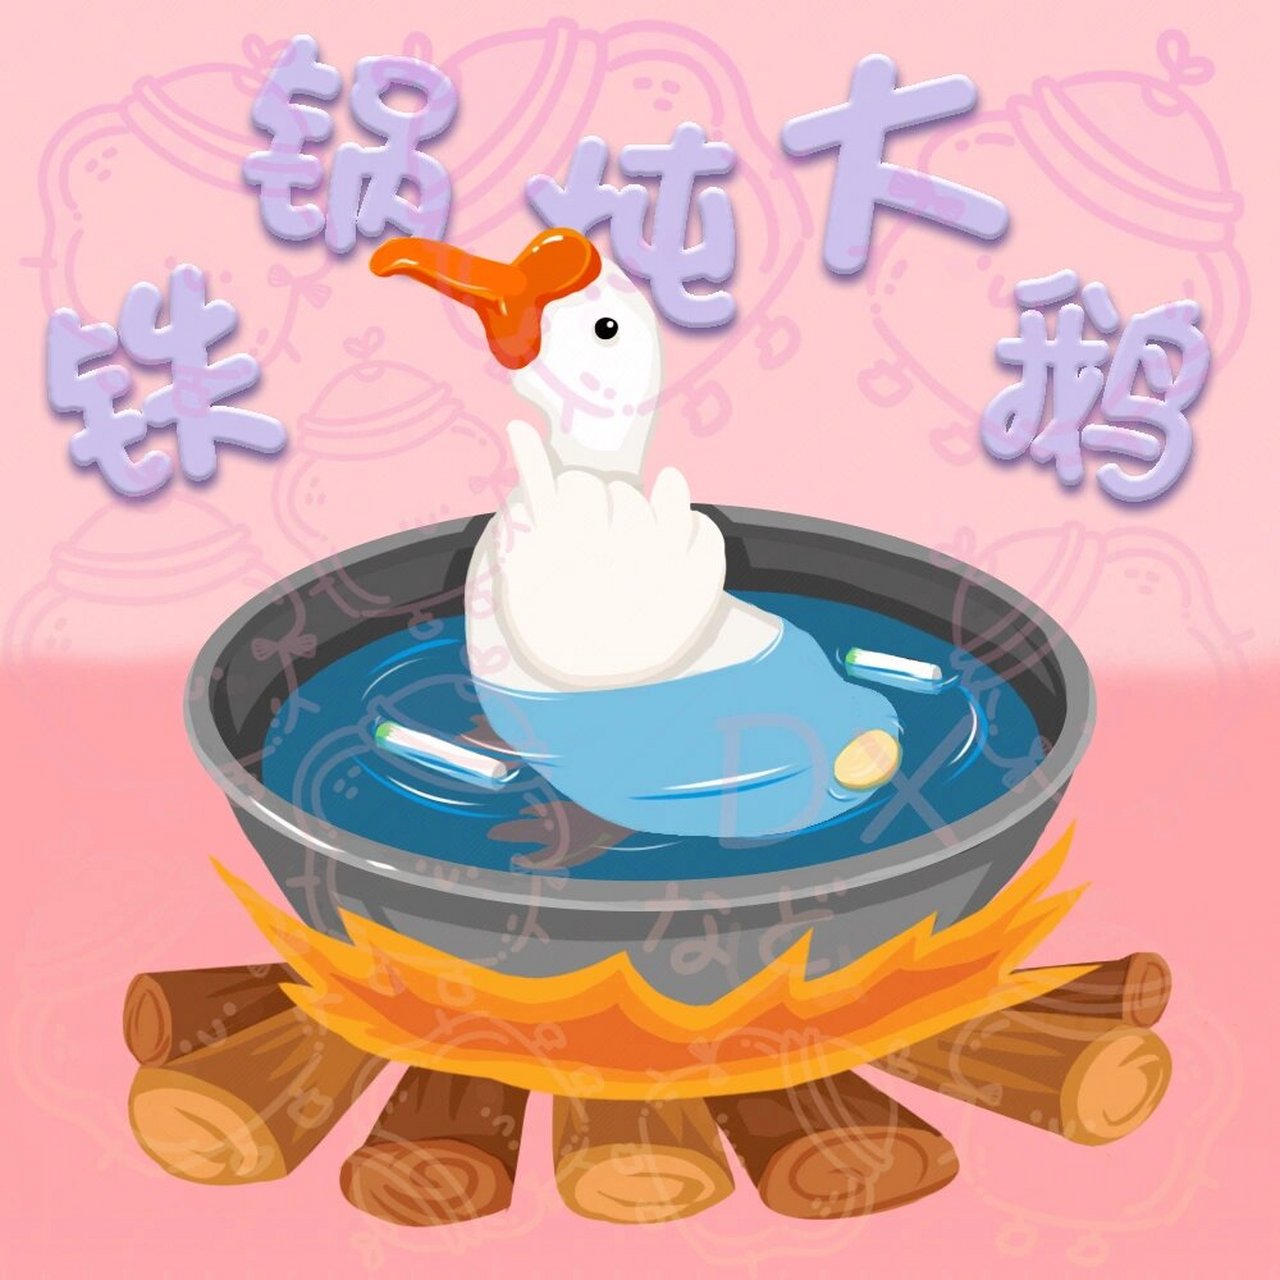 铁锅炖大鹅搞笑照片图片